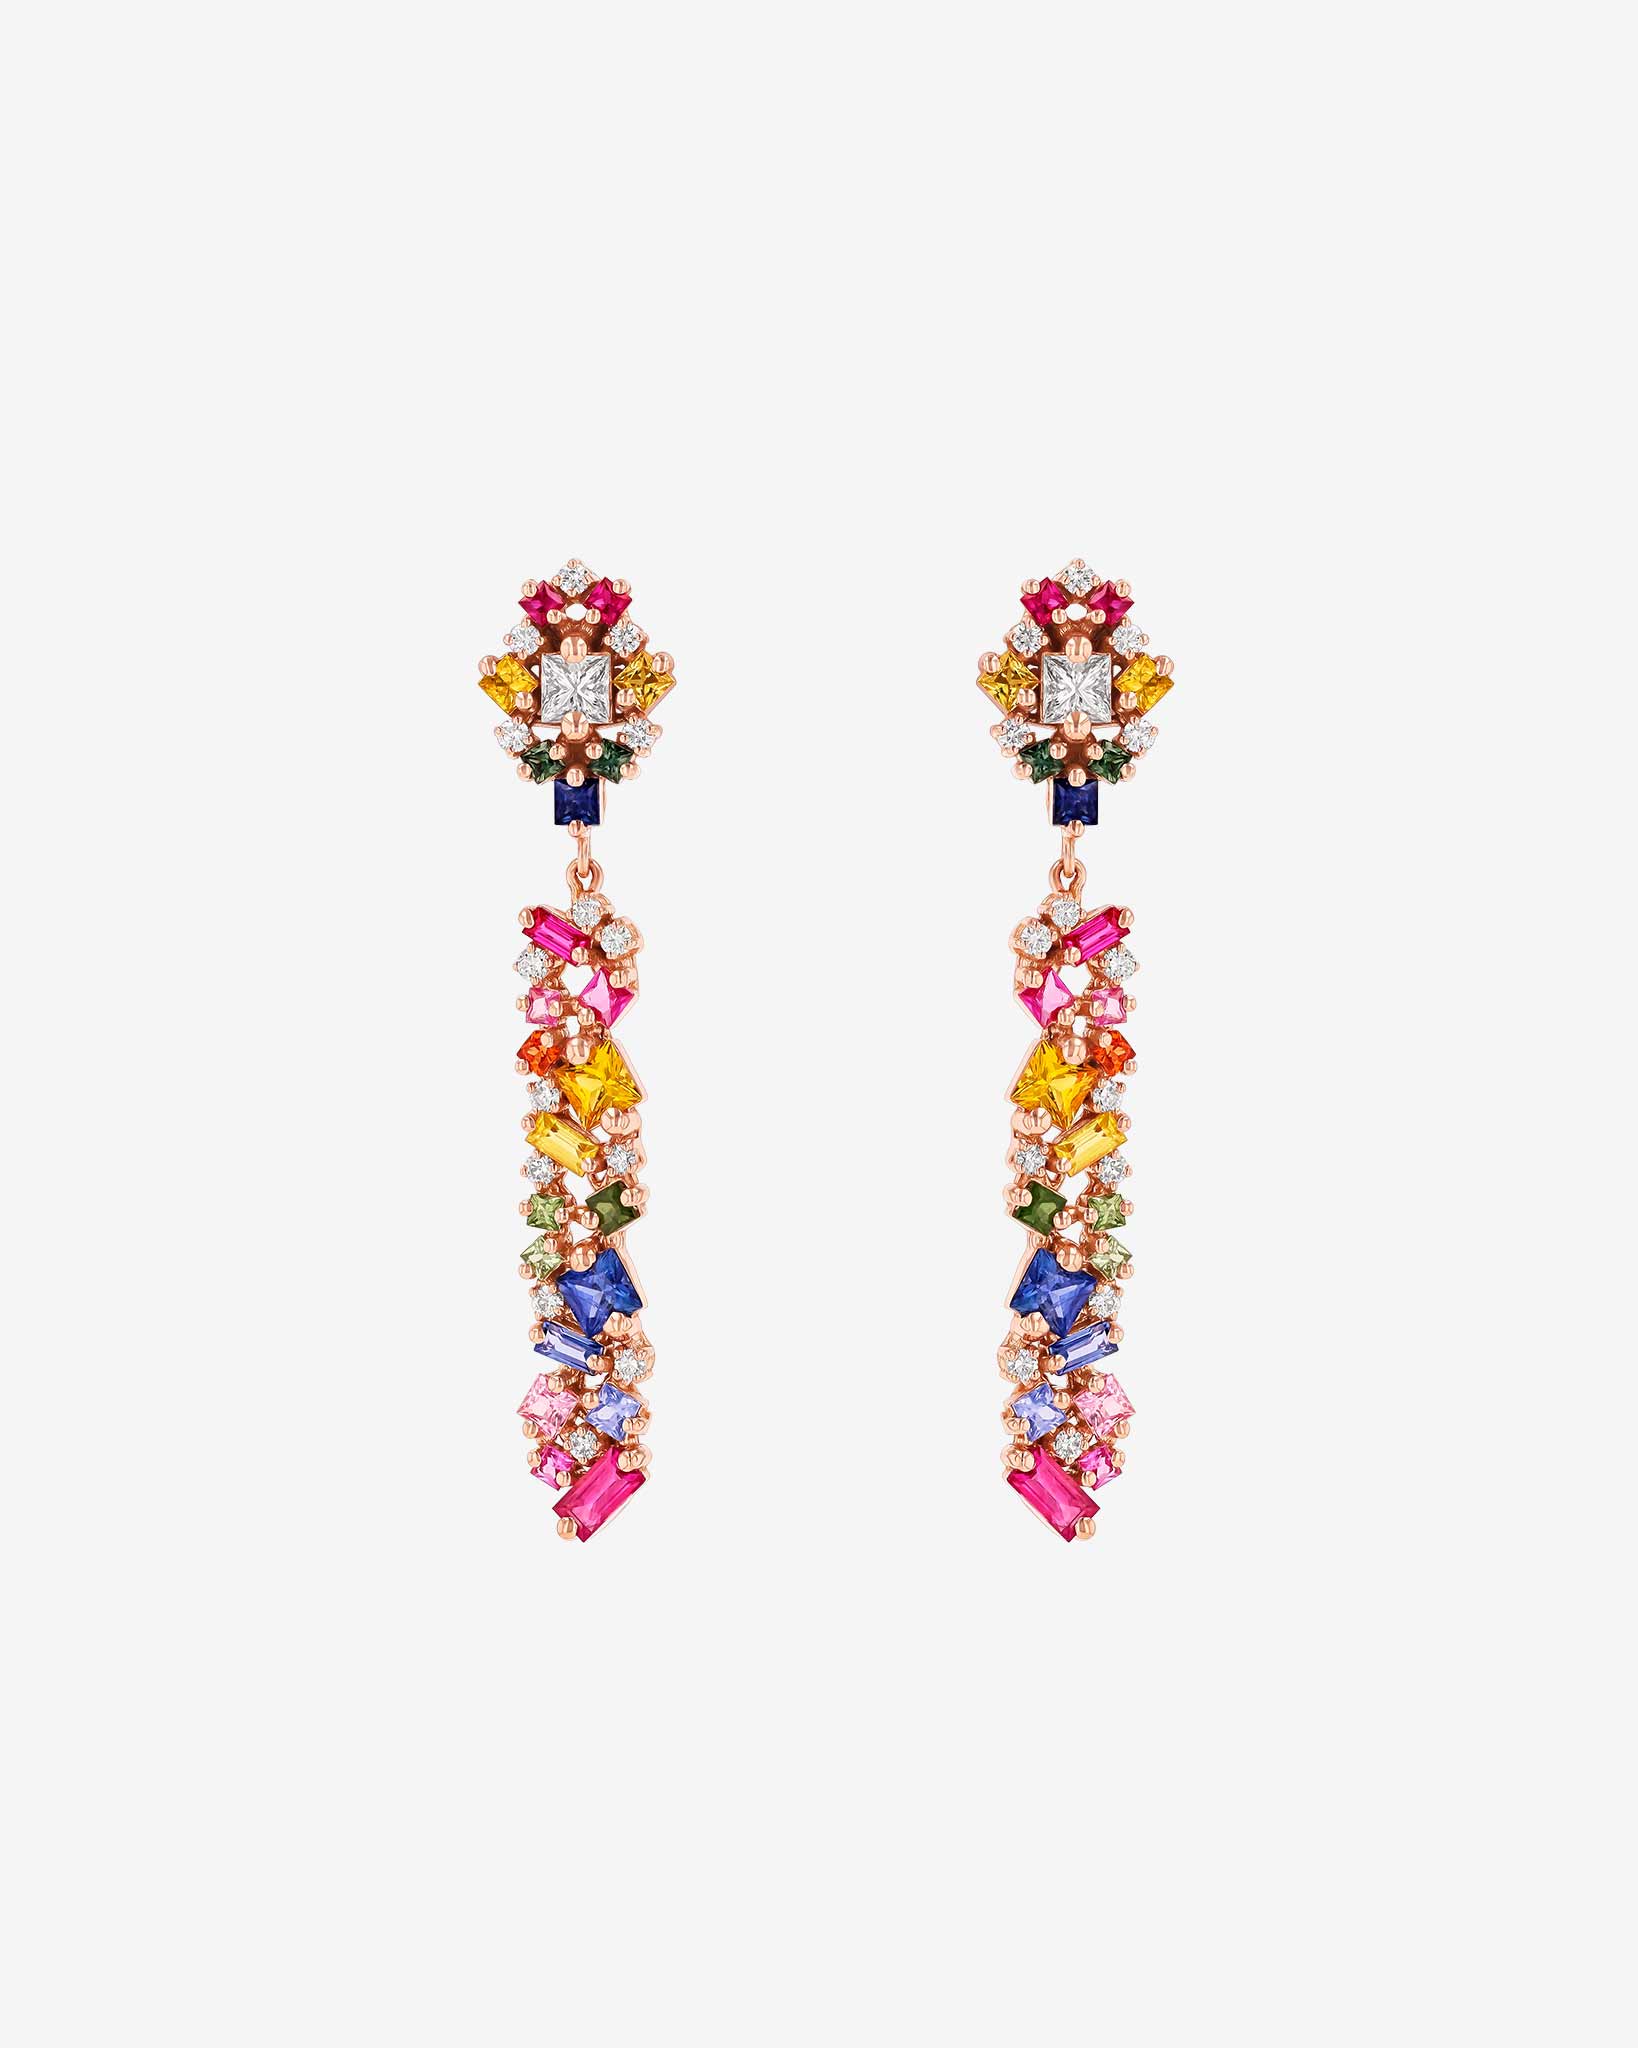 Suzanne Kalan La Fantaisie Sunbeam Rainbow Sapphire Drop Earrings in 18k rose gold